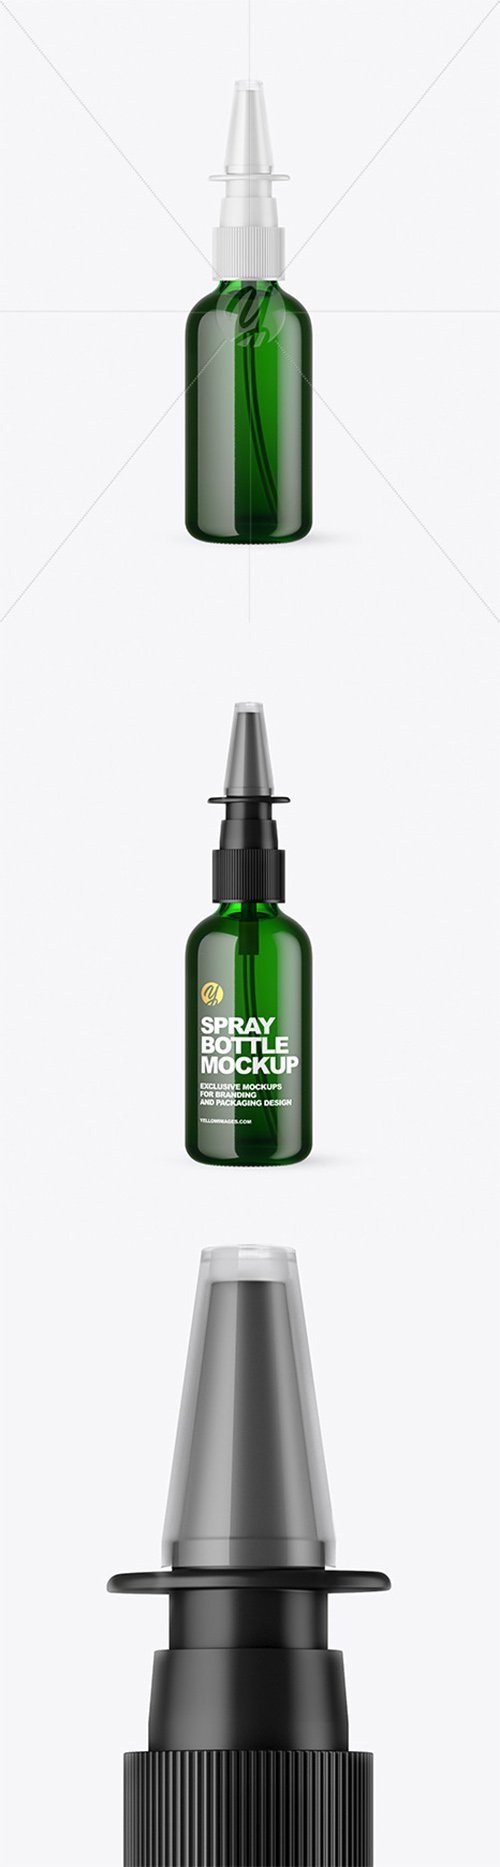 Green Glass Nasal Spray Bottle Mockup 66536 TIF